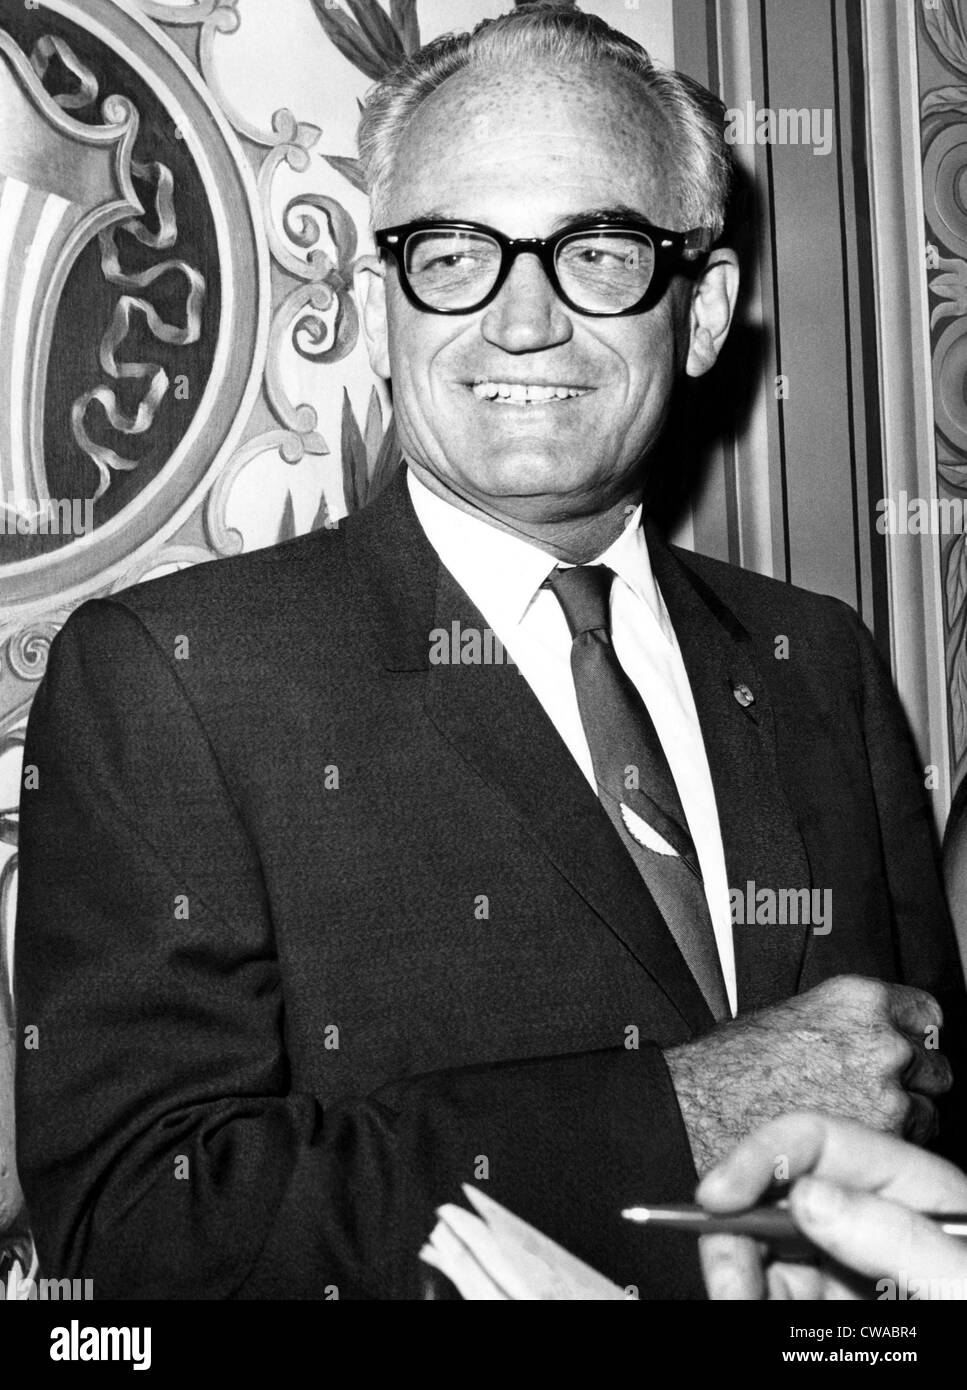 Le sénateur Barry Goldwater, ca. Années 1960. Avec la permission de : Archives CSU/Everett Collection. Banque D'Images